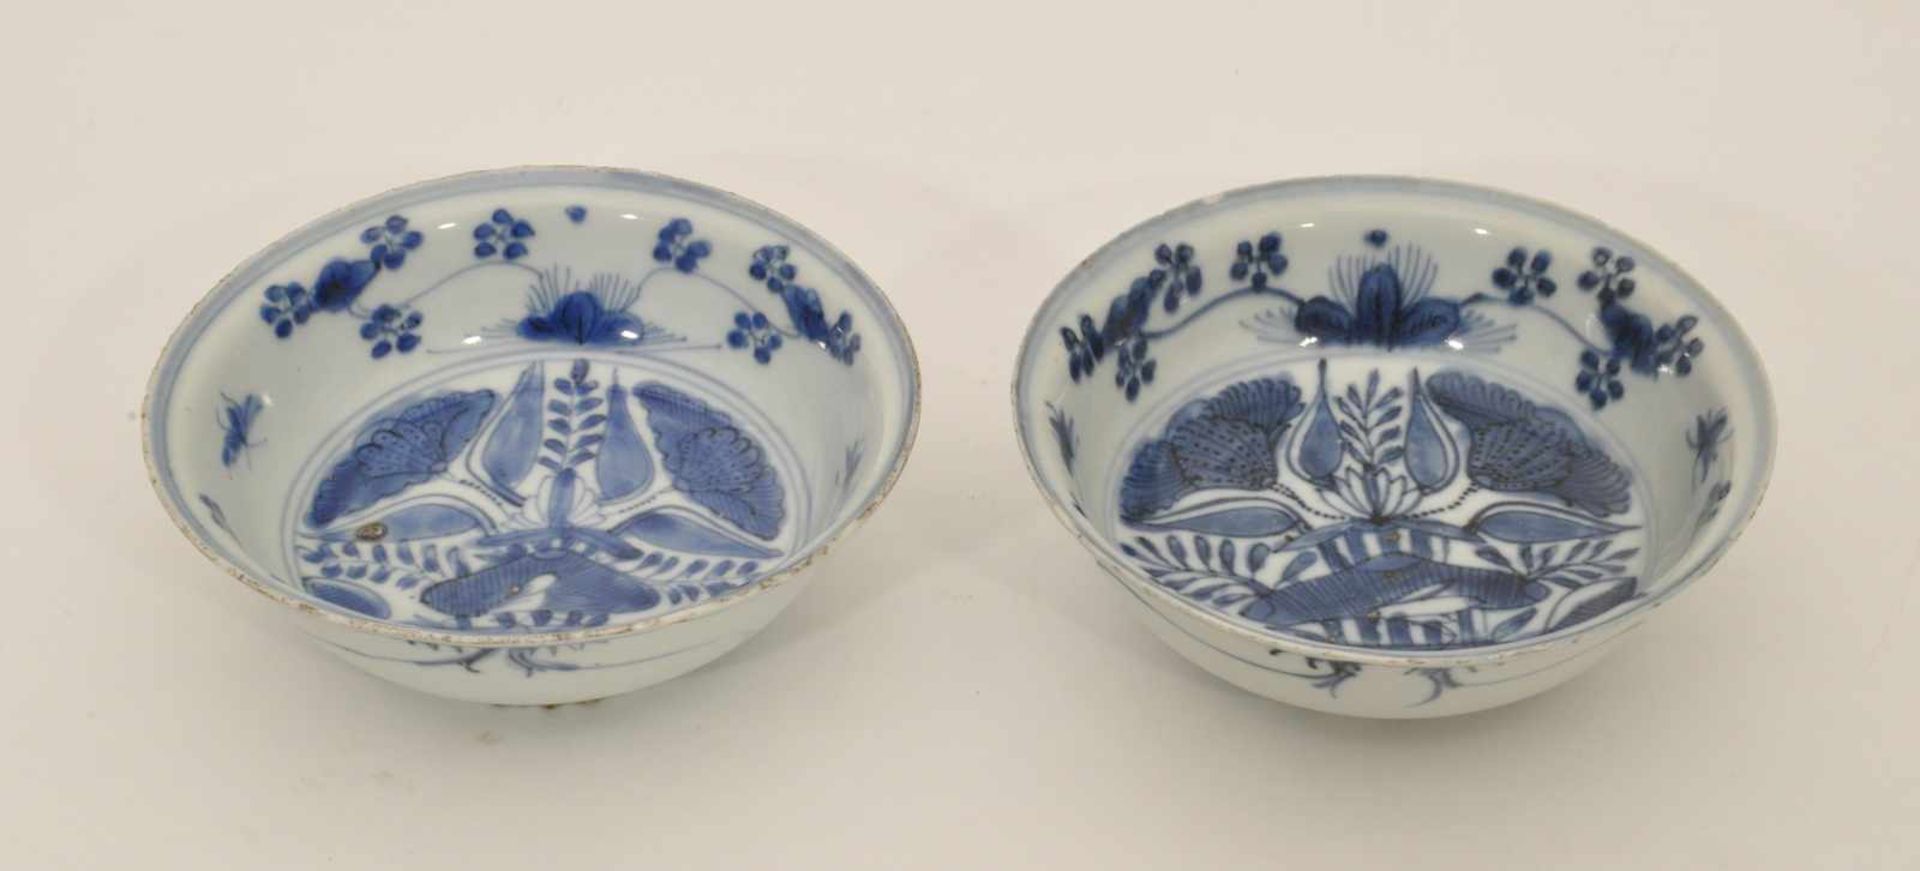 2 Schalen China, 19. Jh., Porzellan, Blaudekor, D. 15,5 cm, H. 5,5 cm